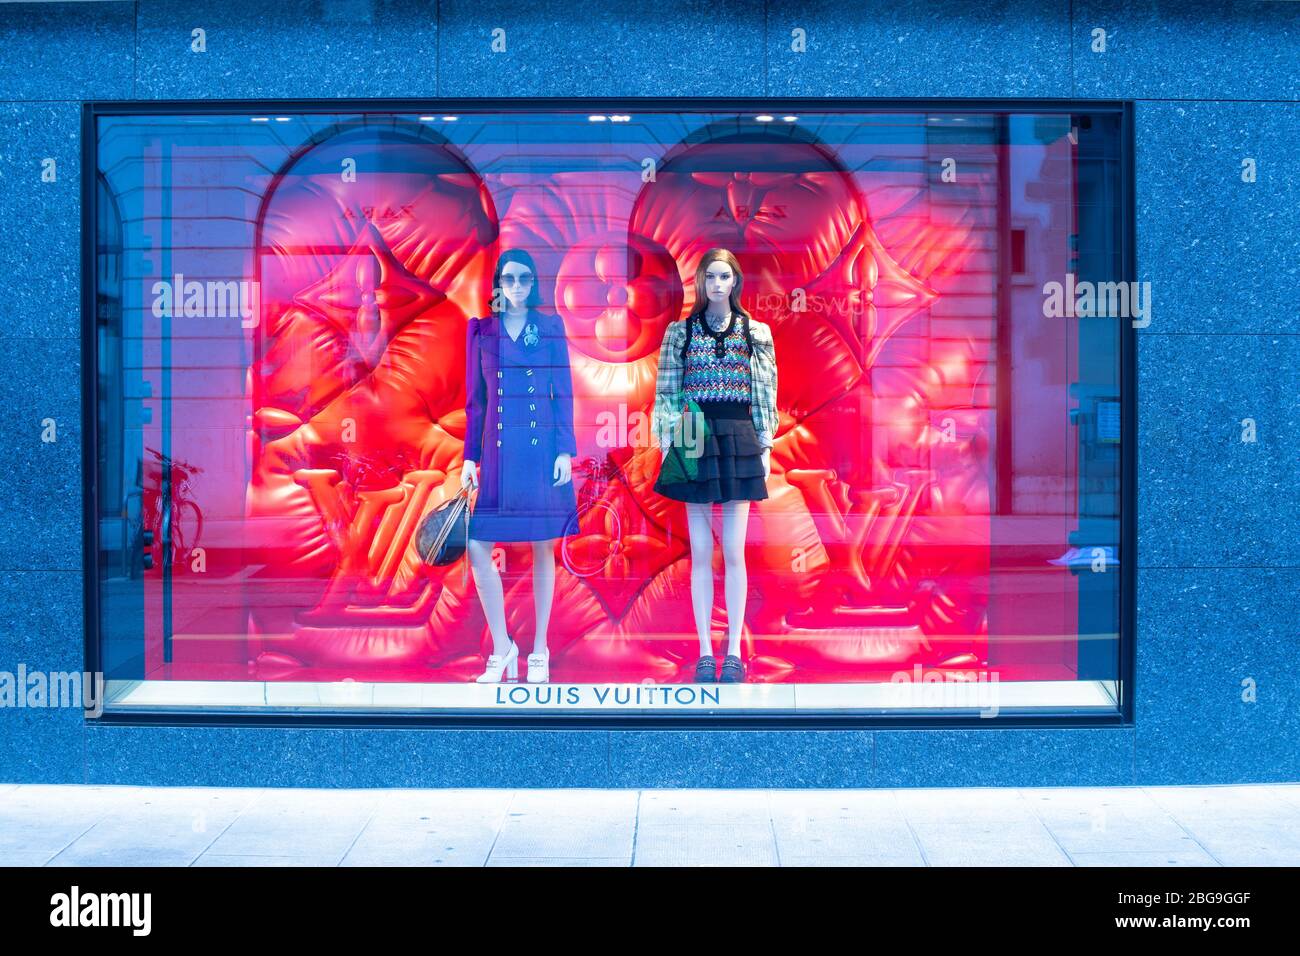 Louis Vuitton Store – Stock Editorial Photo © teamtime #153350778